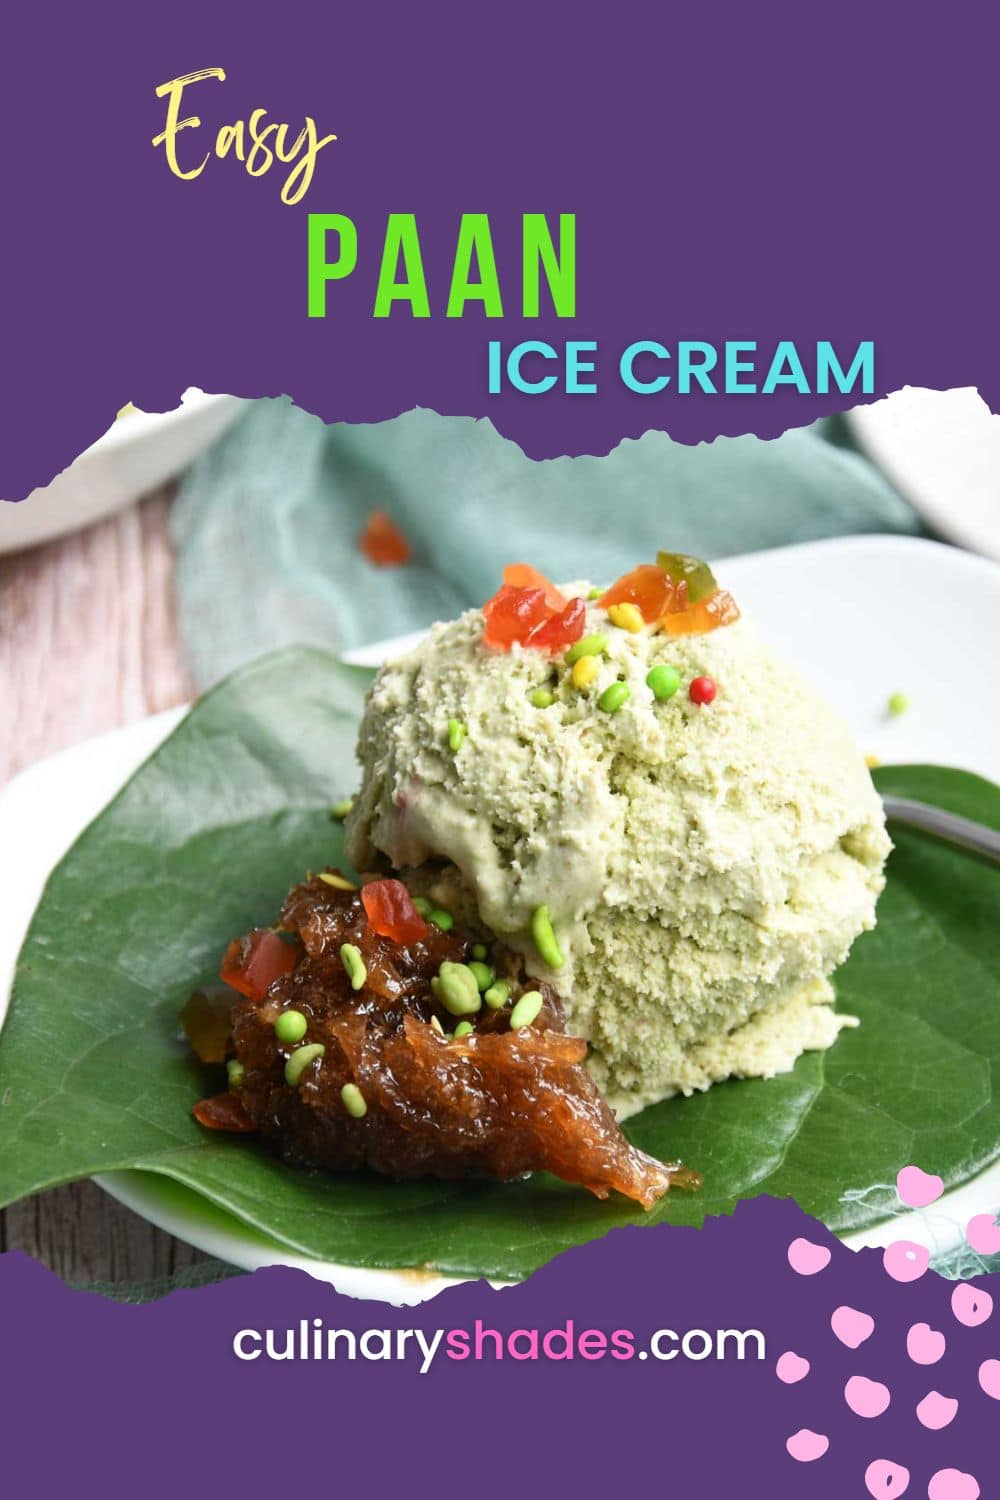 Paan (beetle leaf) Ice cream.